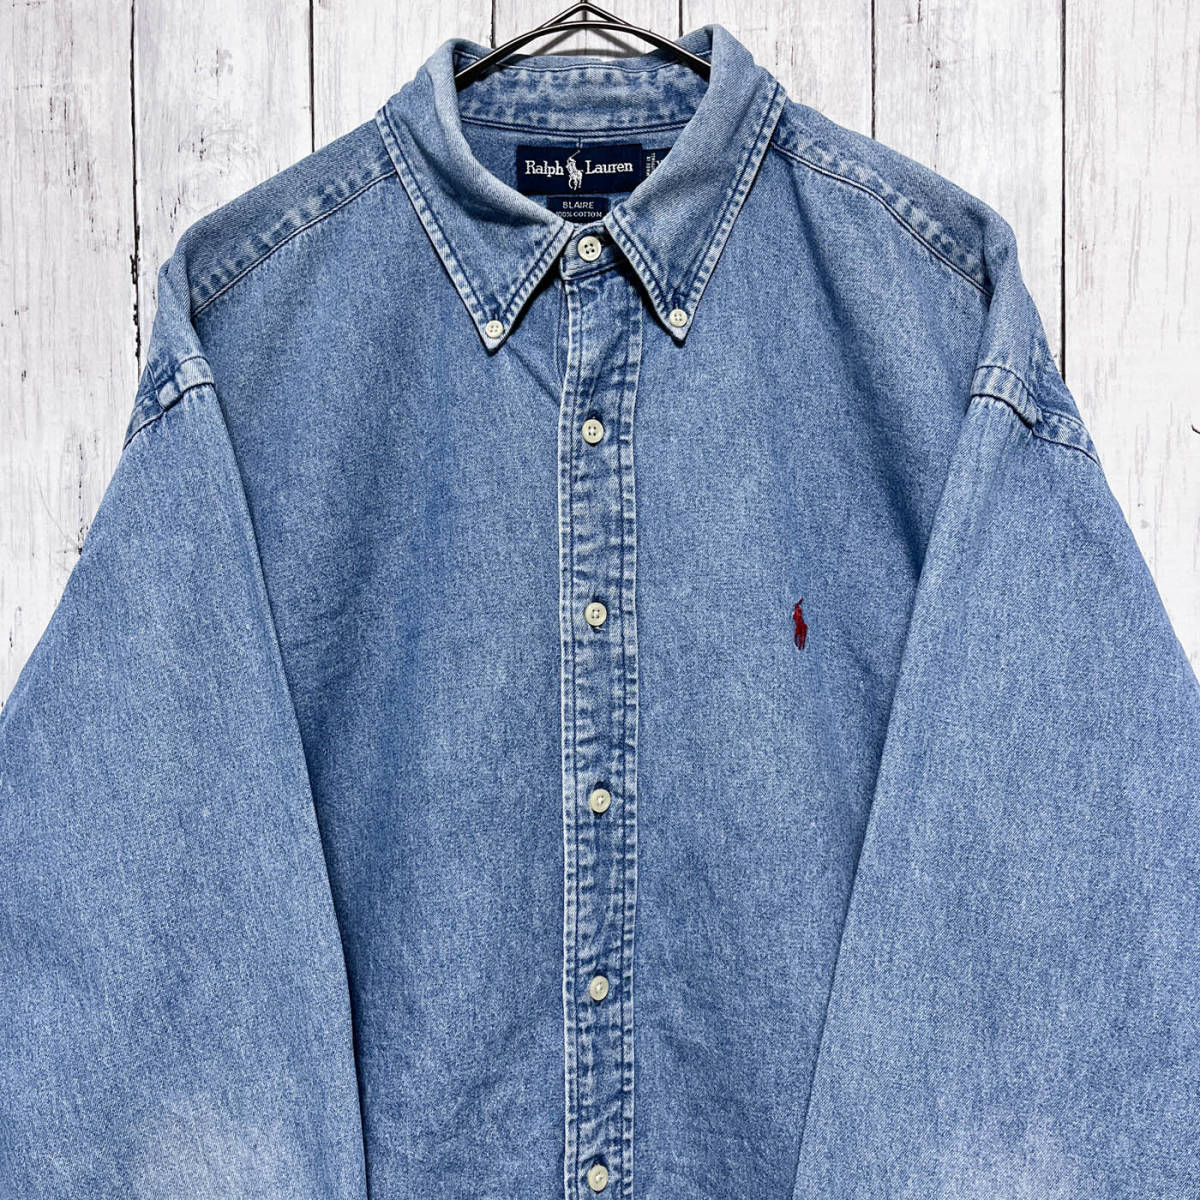  Ralph Lauren Ralph Lauren BLAIRE Denim рубашка рубашка с длинным рукавом мужской one отметка хлопок 100% XL размер 5-277